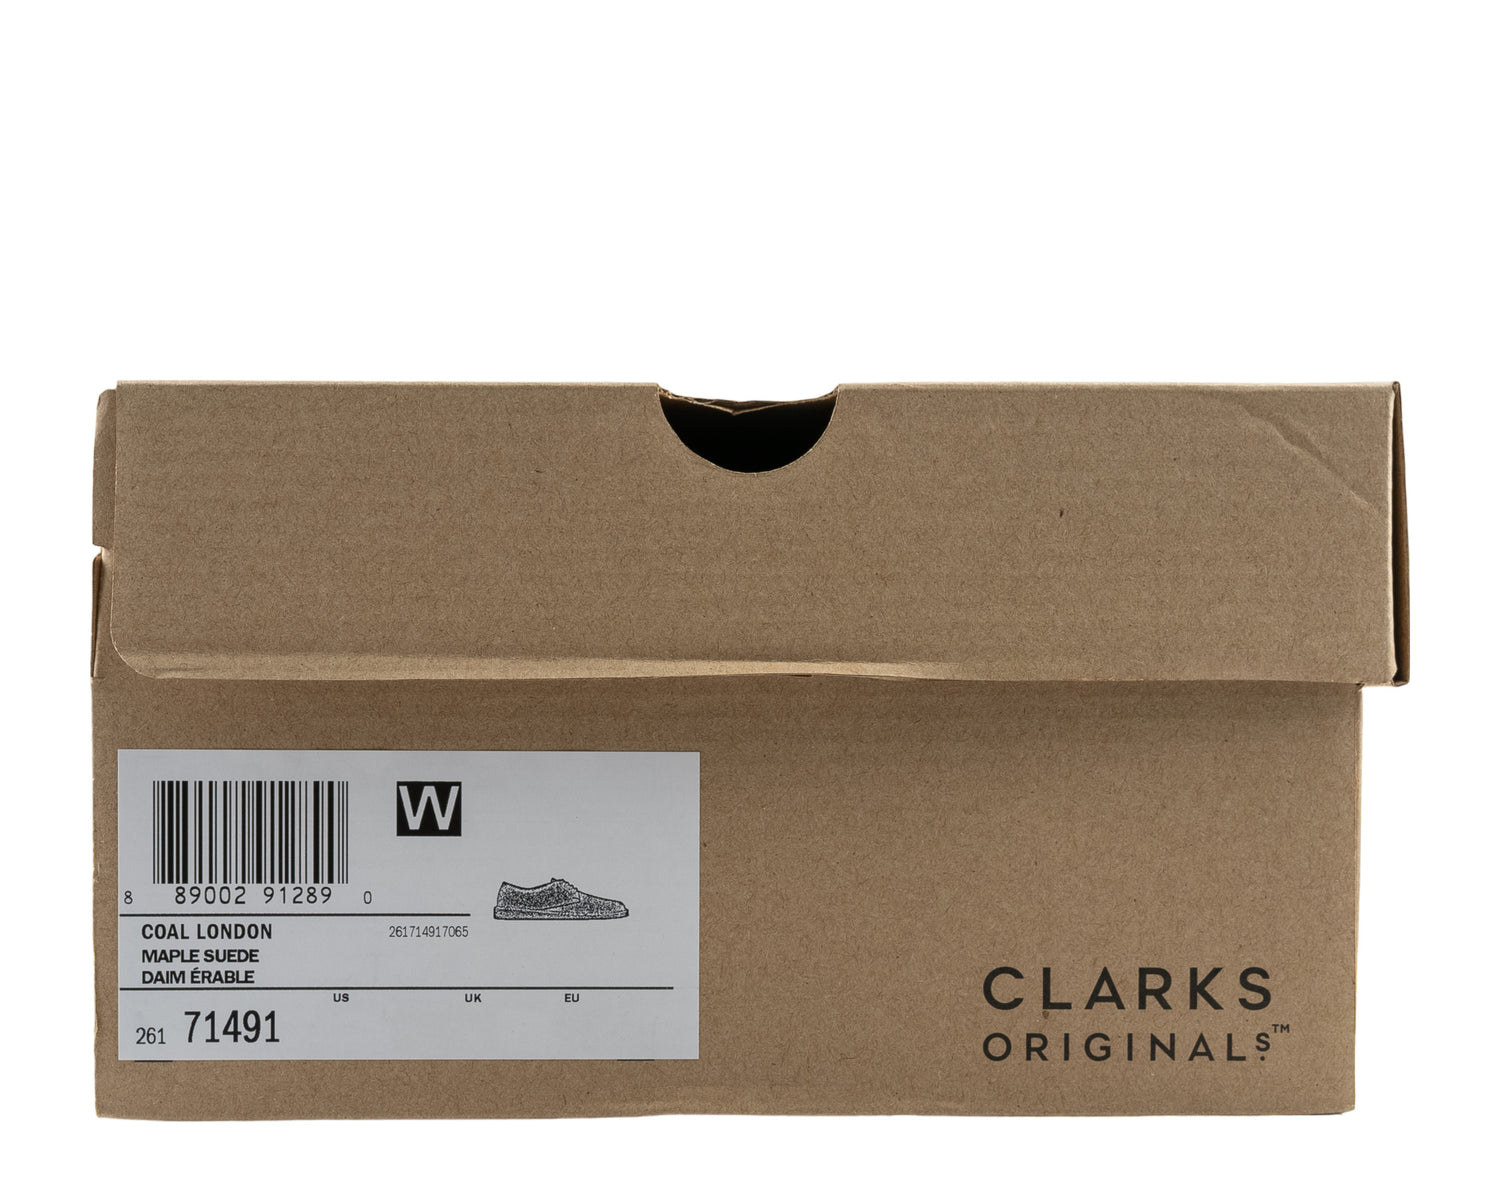 Clarks Originals Coal London Men's Casual Shoes